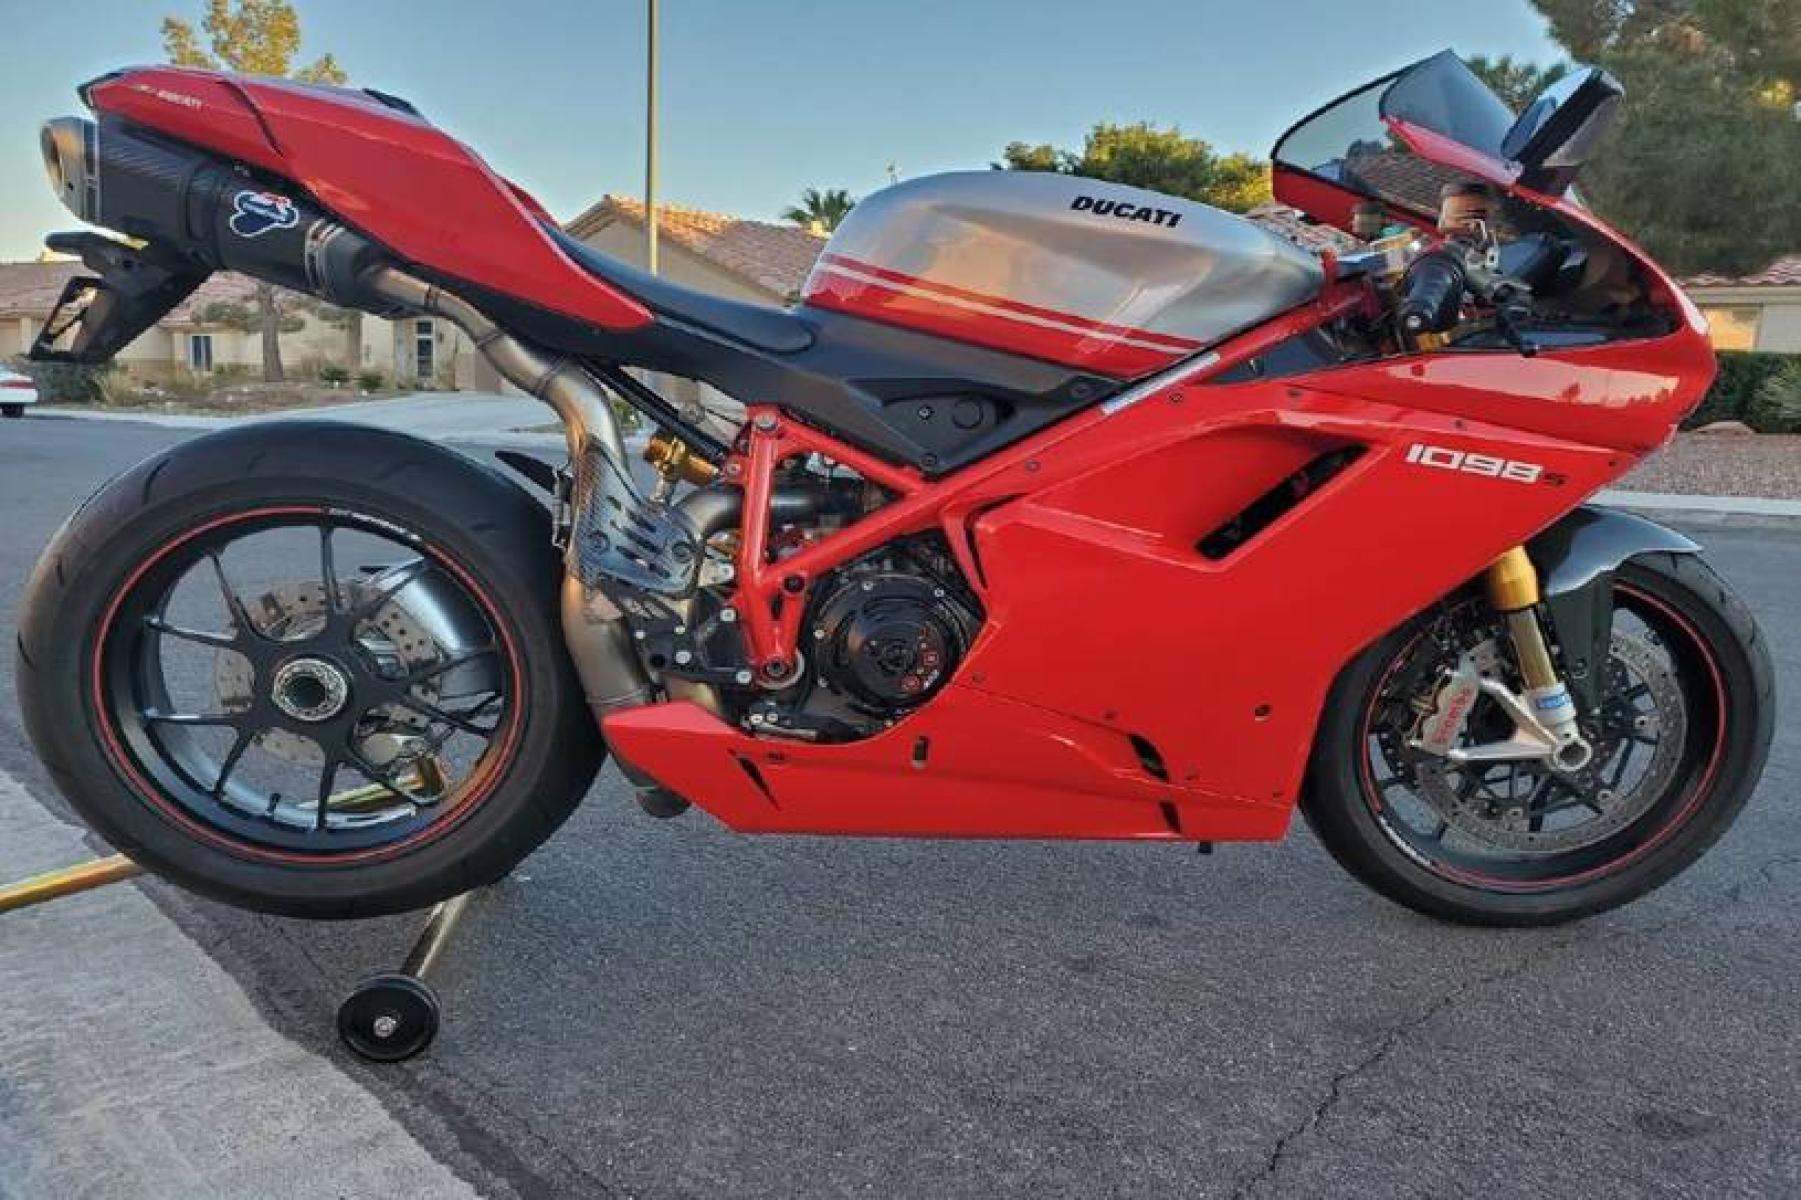 2008 Ducati 1099 S S (ZDM1XBEW18B) with an 1,098 cc L twin engine, Six-Speed Dry Clutch transmission, located at 3160 South Valley View Blvd, Las Vegas, NV, 89146, (888) 750-6845, 36.132458, -115.190247 - b64:VGhlIER1Y2F0aSAxMDk4UyBib2FzdHMgc29tZSBnb3JnZW91cyBib2R5d29yayBhbmQgc2xpY2sgZGVzaWduIGN1ZXMsIGJ1dCBpdHMgcmVhbCBtYXN0ZXJwaWVjZSBsaWVzIGJlbmVhdGggdGhvc2UgcHJldHR5IHBsYXN0aWMgcGFuZWxzLiBVbmRlcm5lYXRoIGlzIGEgdHVidWxhciBzdGVlbCB0cmVsbGlzIGZyYW1lIG9wdGltaXplZCBmb3Igc3RpZmZuZXNzLCBhbmQgYW4gTC10d2luIGVu - Photo #2